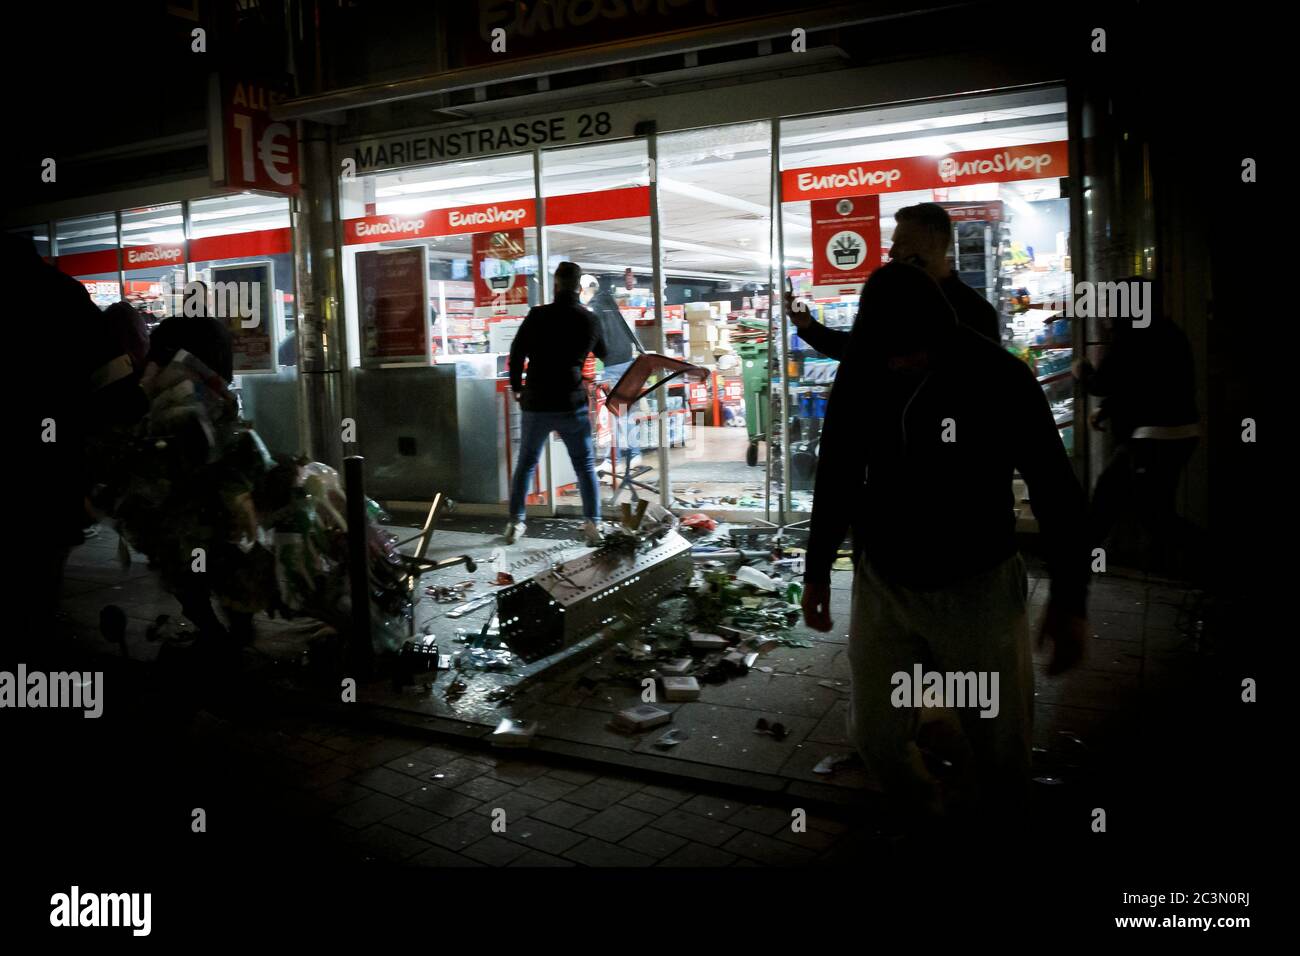 Stuttgart, Deutschland. Juni 2020. Hunderte von Menschen in kleinen gewalttätigen Gruppen verwüsteten die deutsche Innenstadt von Stuttgart. Quelle: Julian Rettig/dpa/Alamy Live News Stockfoto